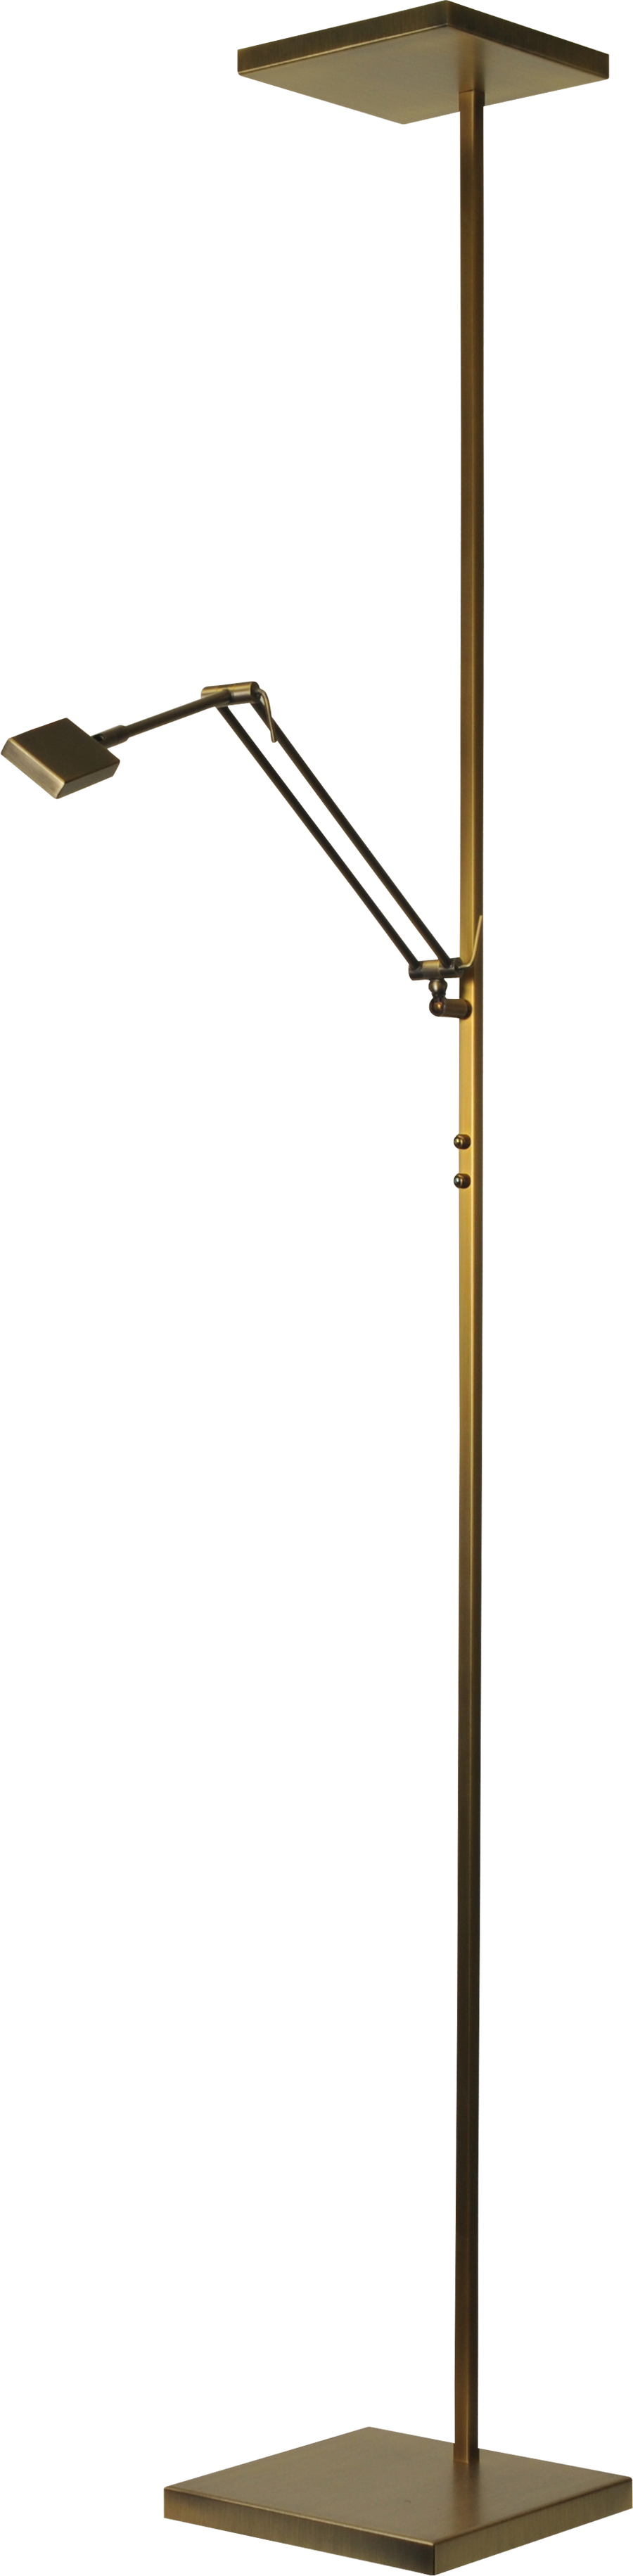 Vloerlamp Denia 1 LED Masterlight 1881-01